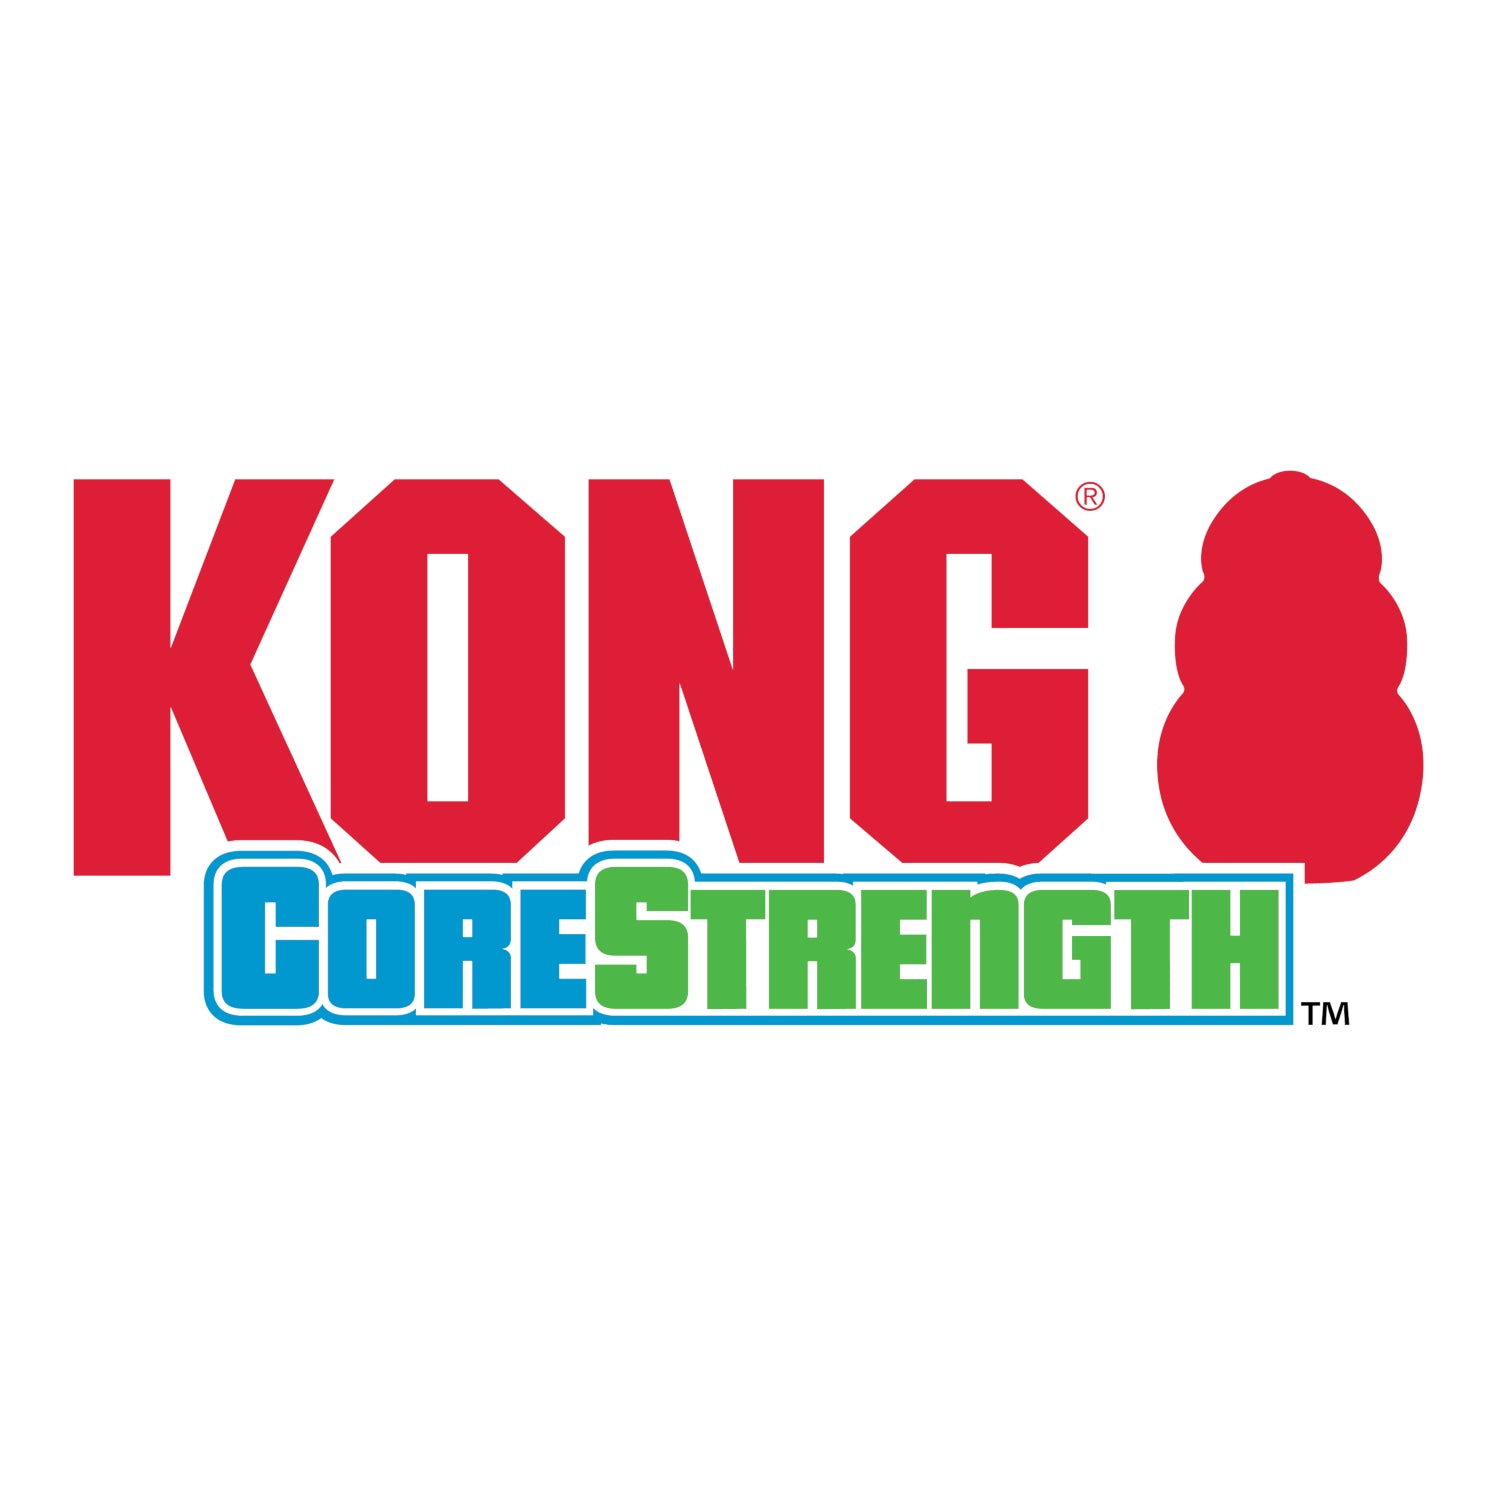 KONG CoreStrength Ball